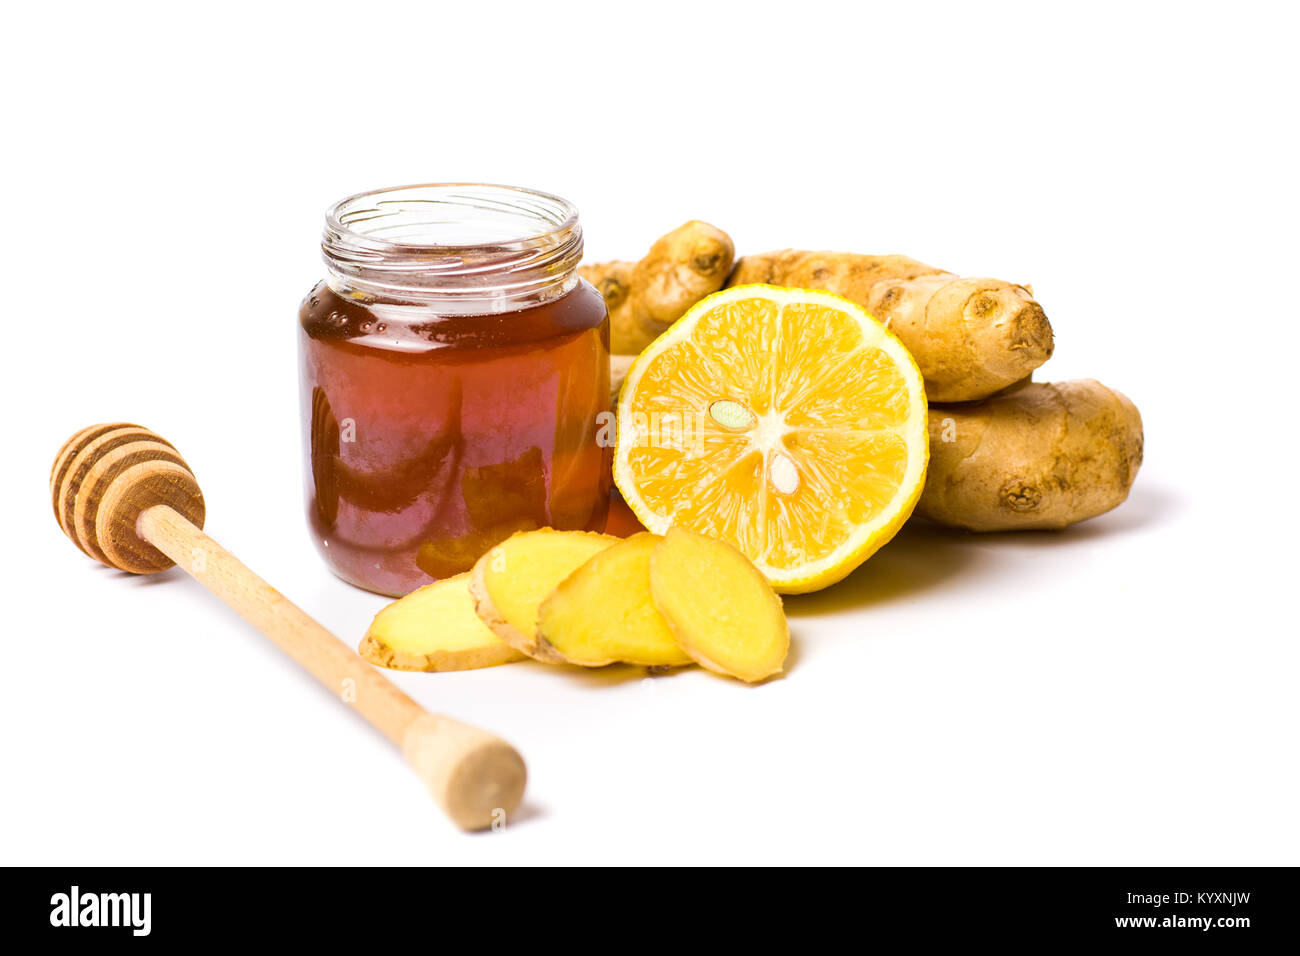 Jar of honey and lemon, gingers isolated on white background. Stock Photo